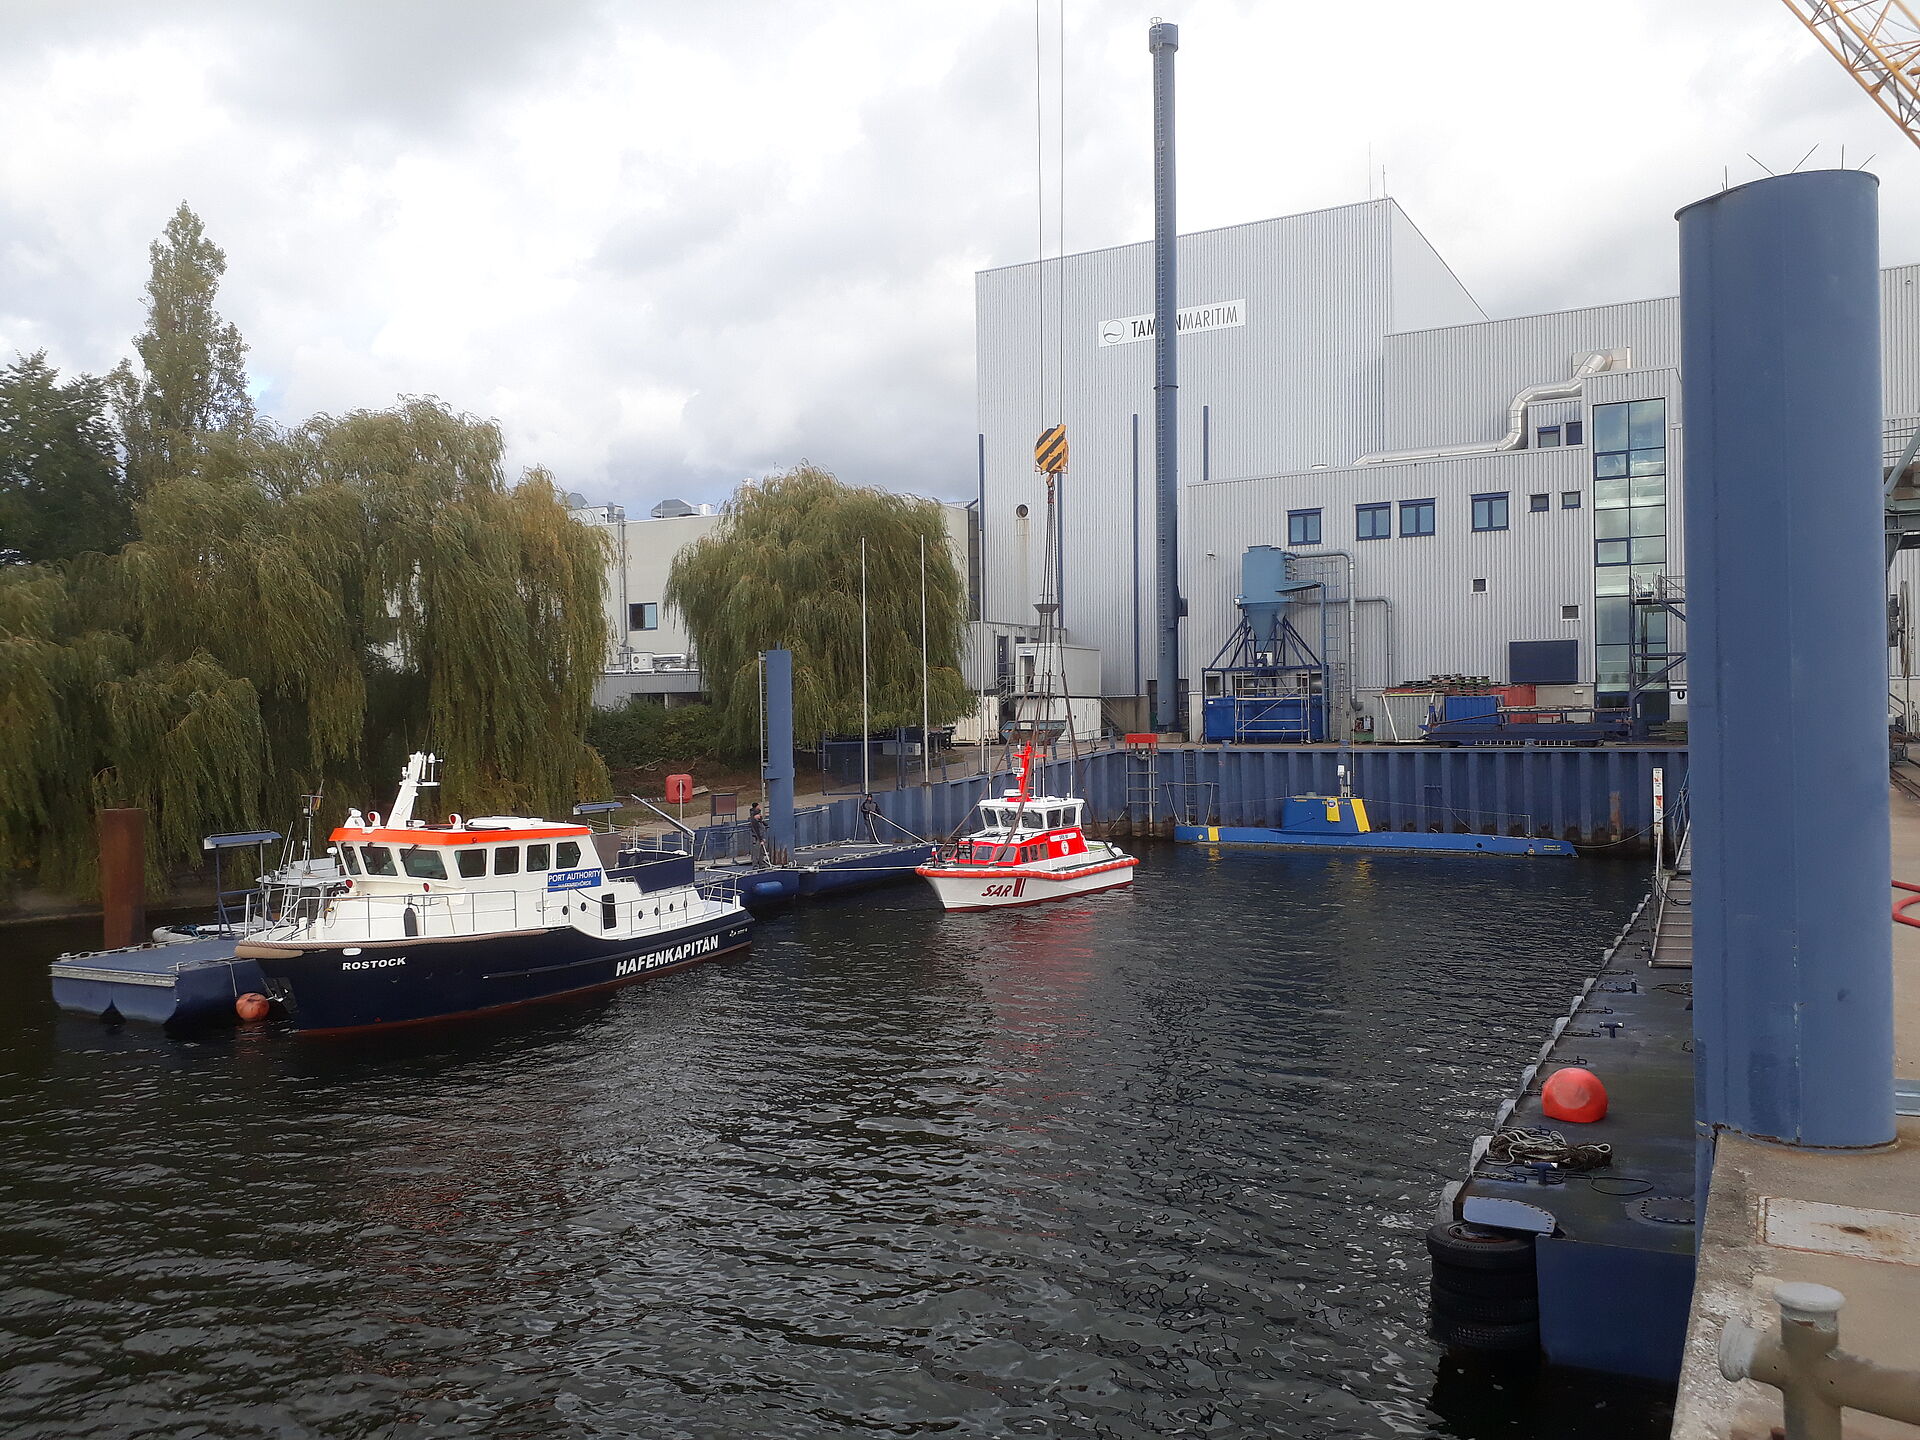 Das Seenotrettungsboot liegt im kleinen Hafenbecken der Werft. Dahinter sind die großen Hallen der Werft zu sehen.